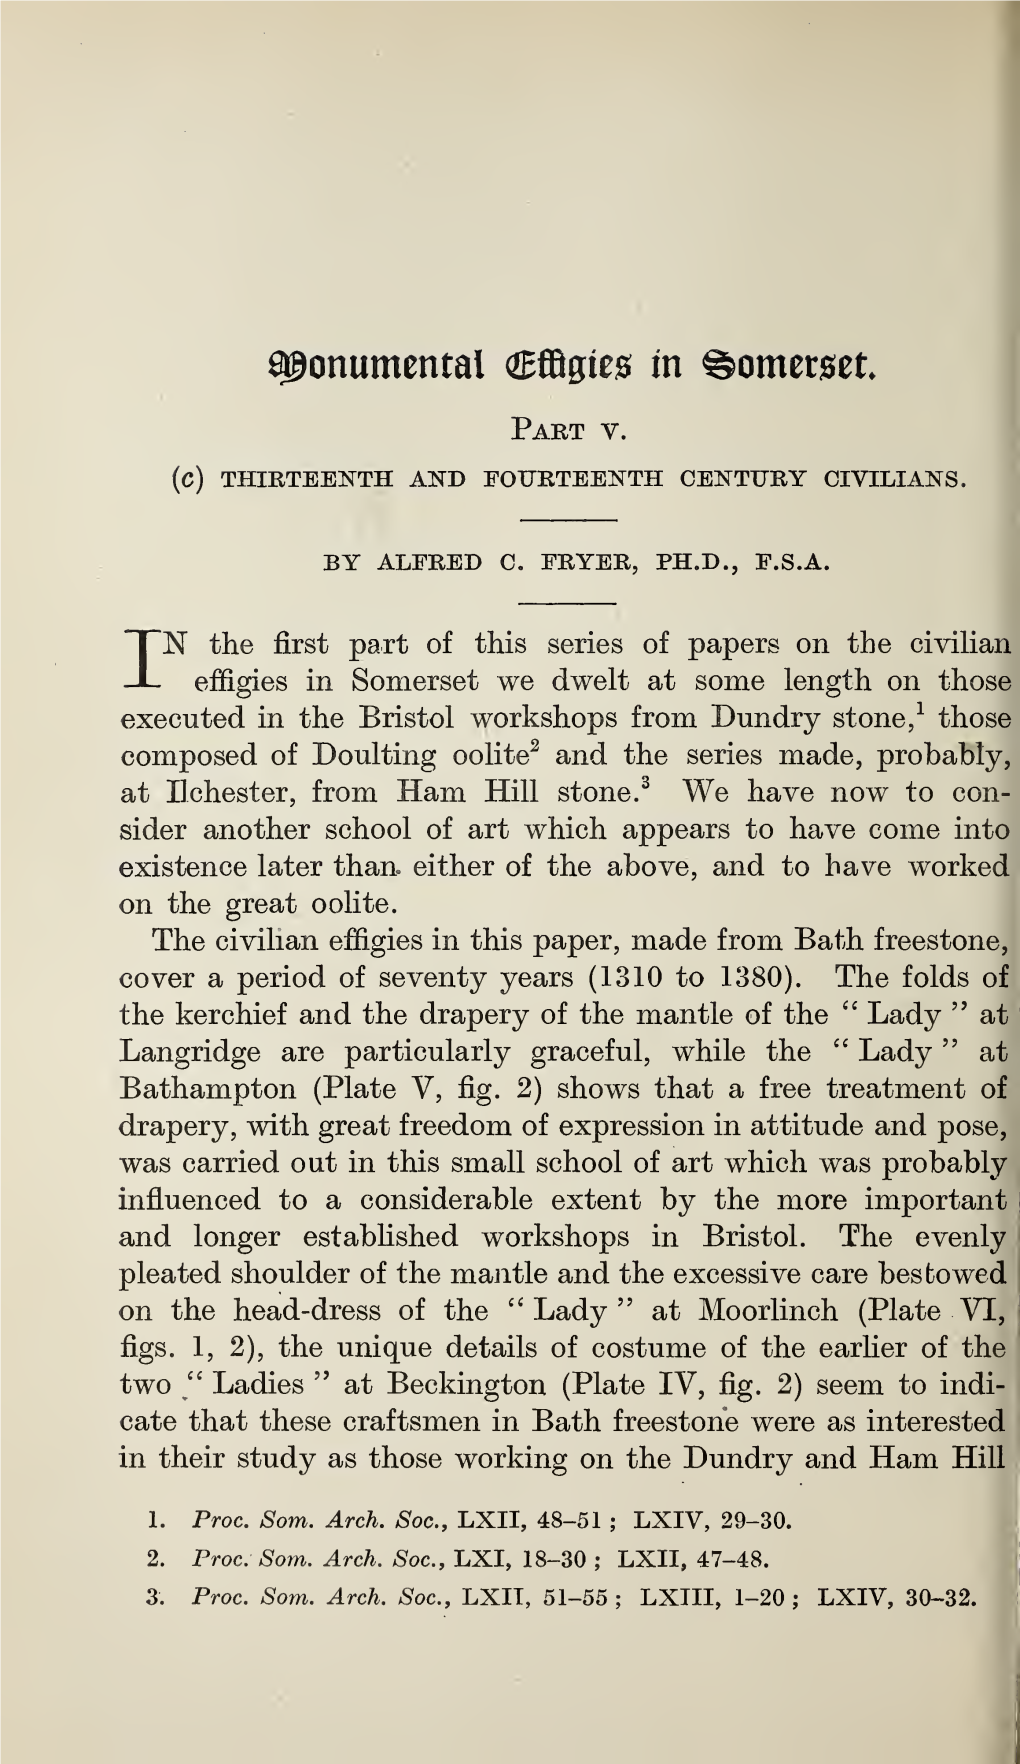 Fryer, a C, Monumental Effigies in Somerset. Part V, Part II, Volume 65